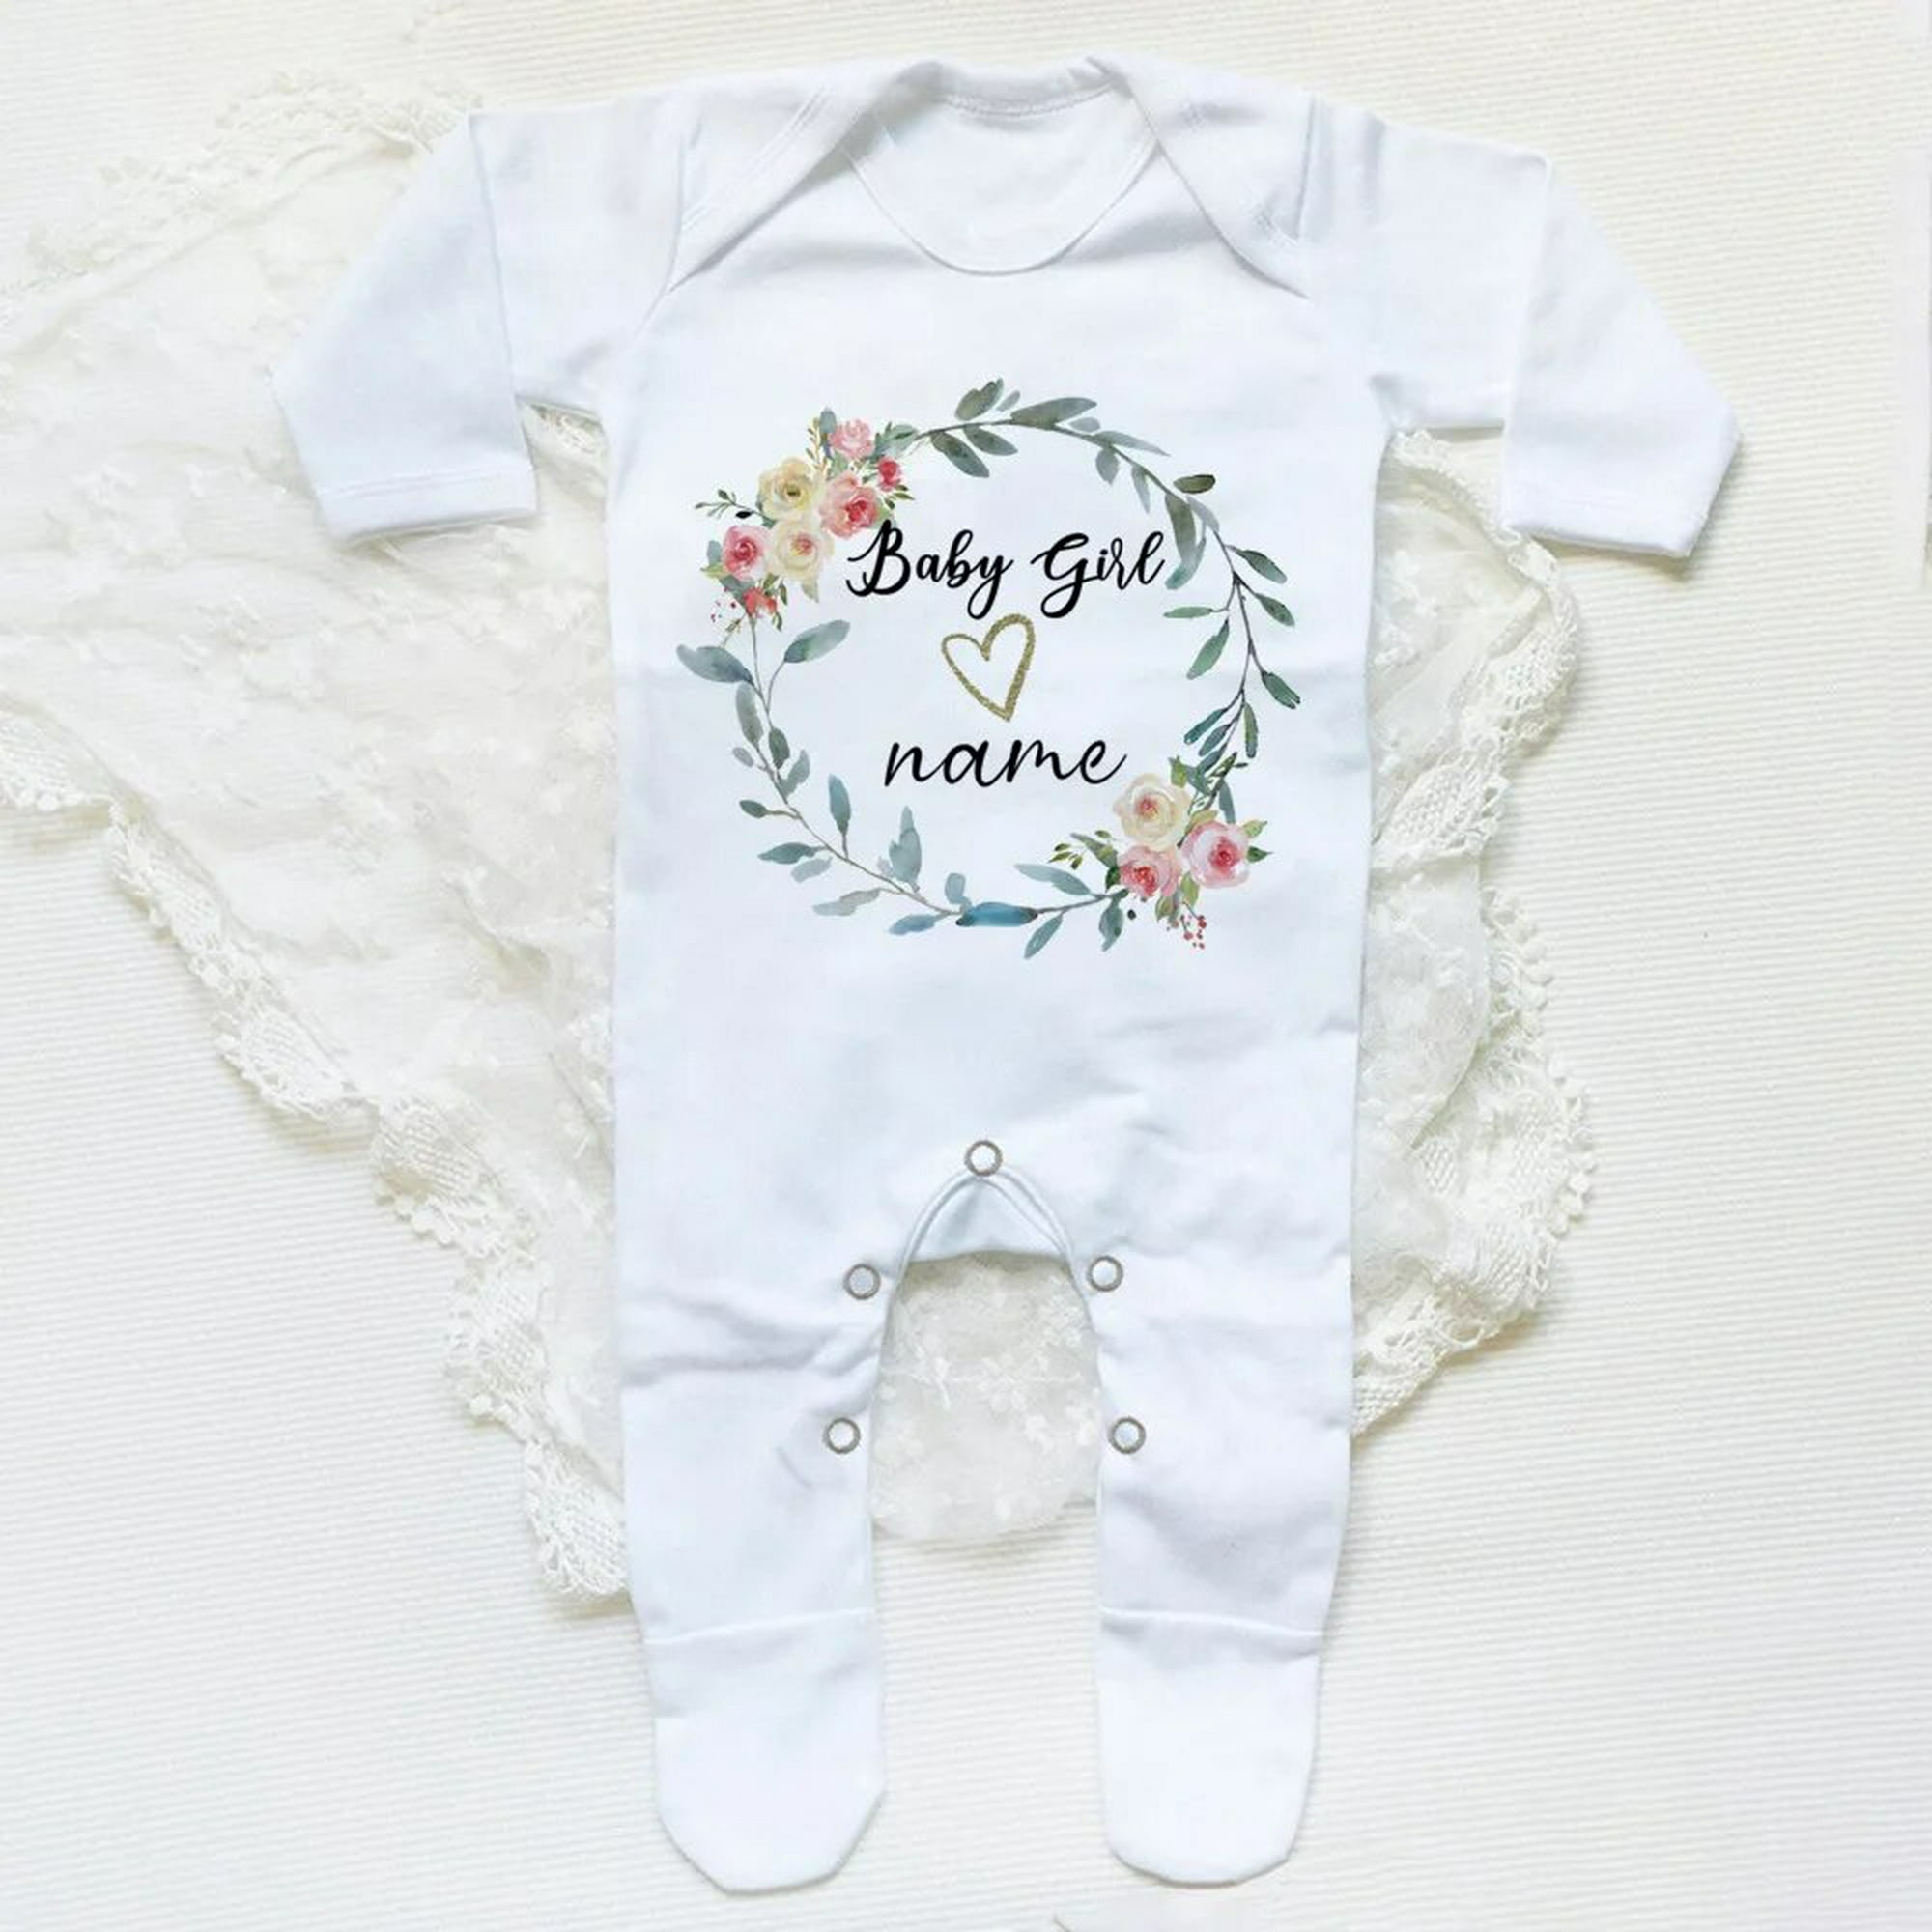 Recién nacido niño que viene a casa traje bebé niño regalo bebé ducha regalo  bebé ropa bebé niño traje -  México